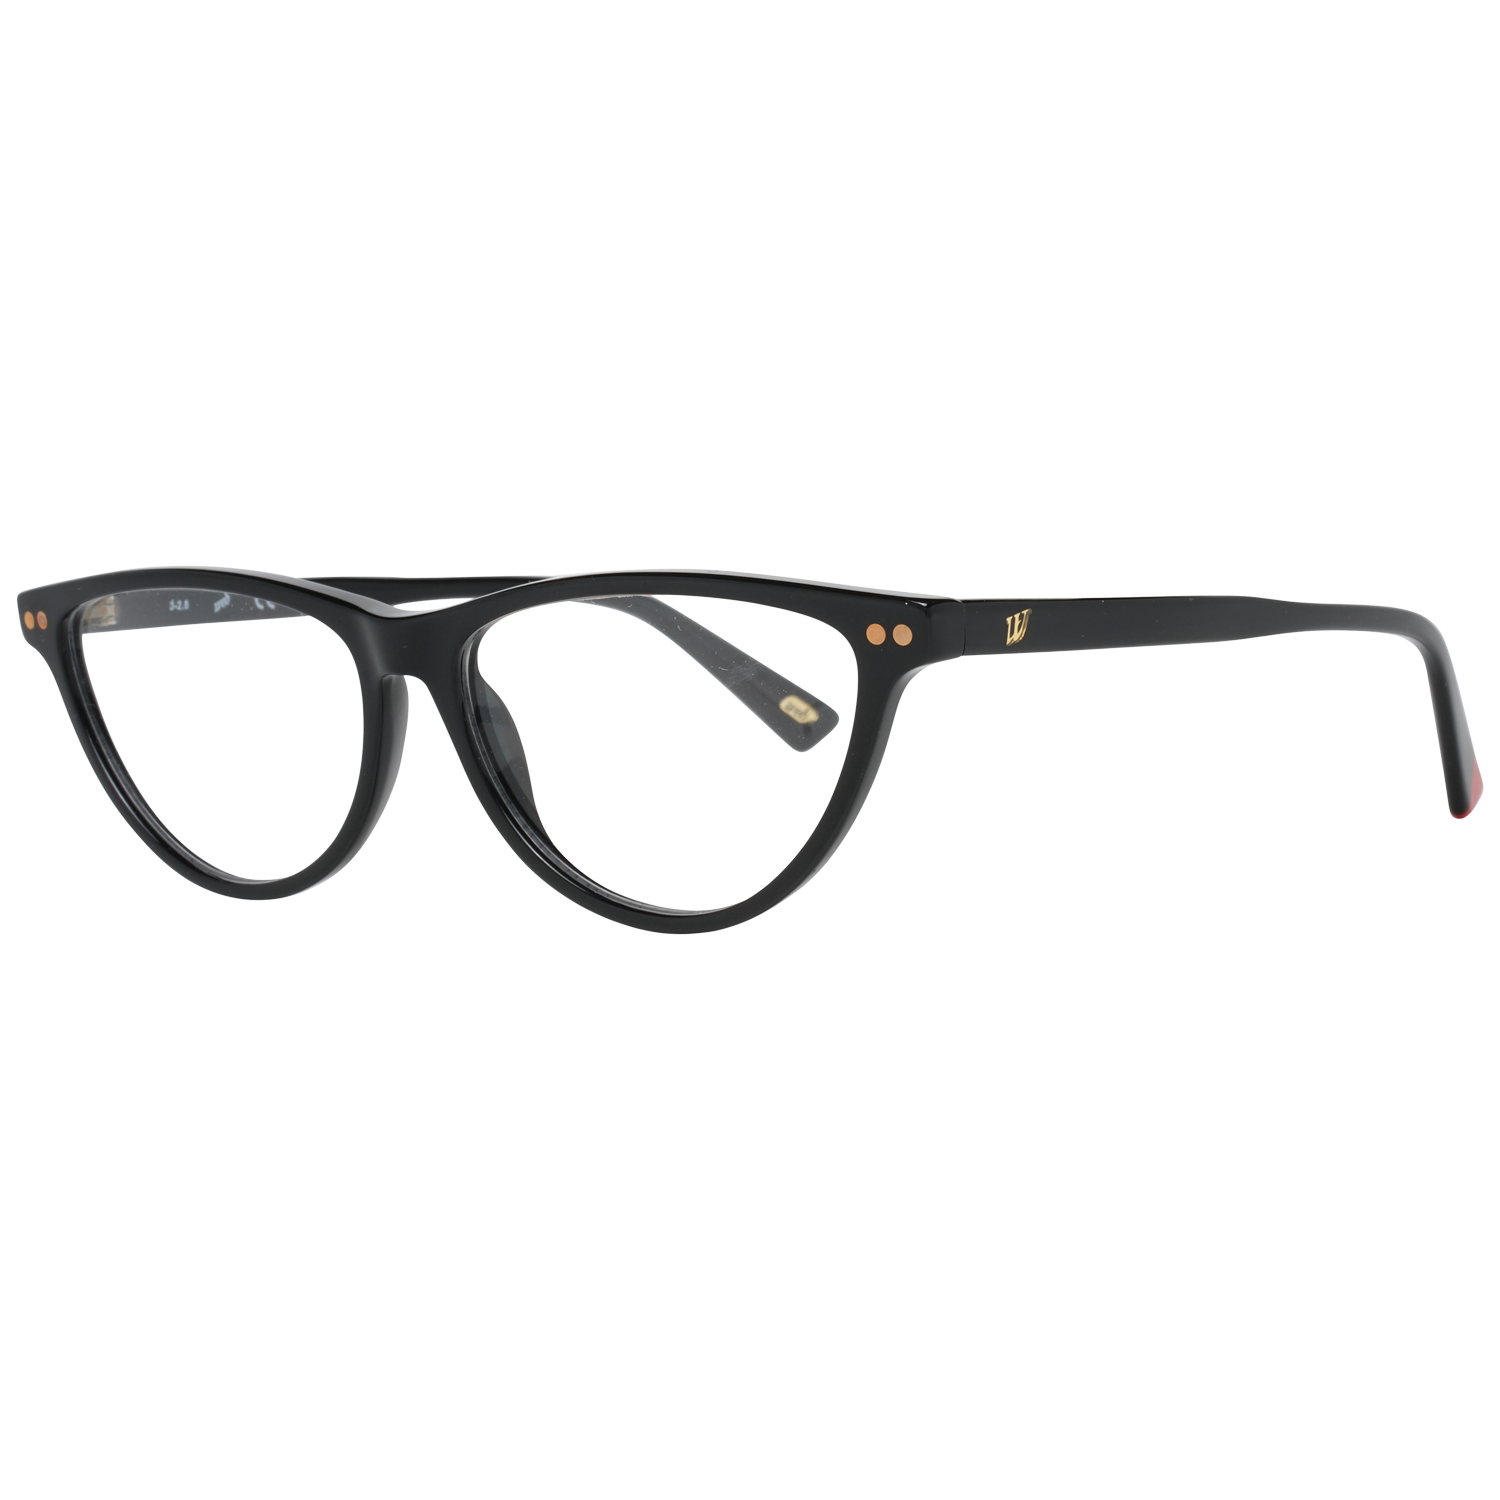 Web Frames Web Optical Frame WE5305 001 55 Eyeglasses Eyewear UK USA Australia 